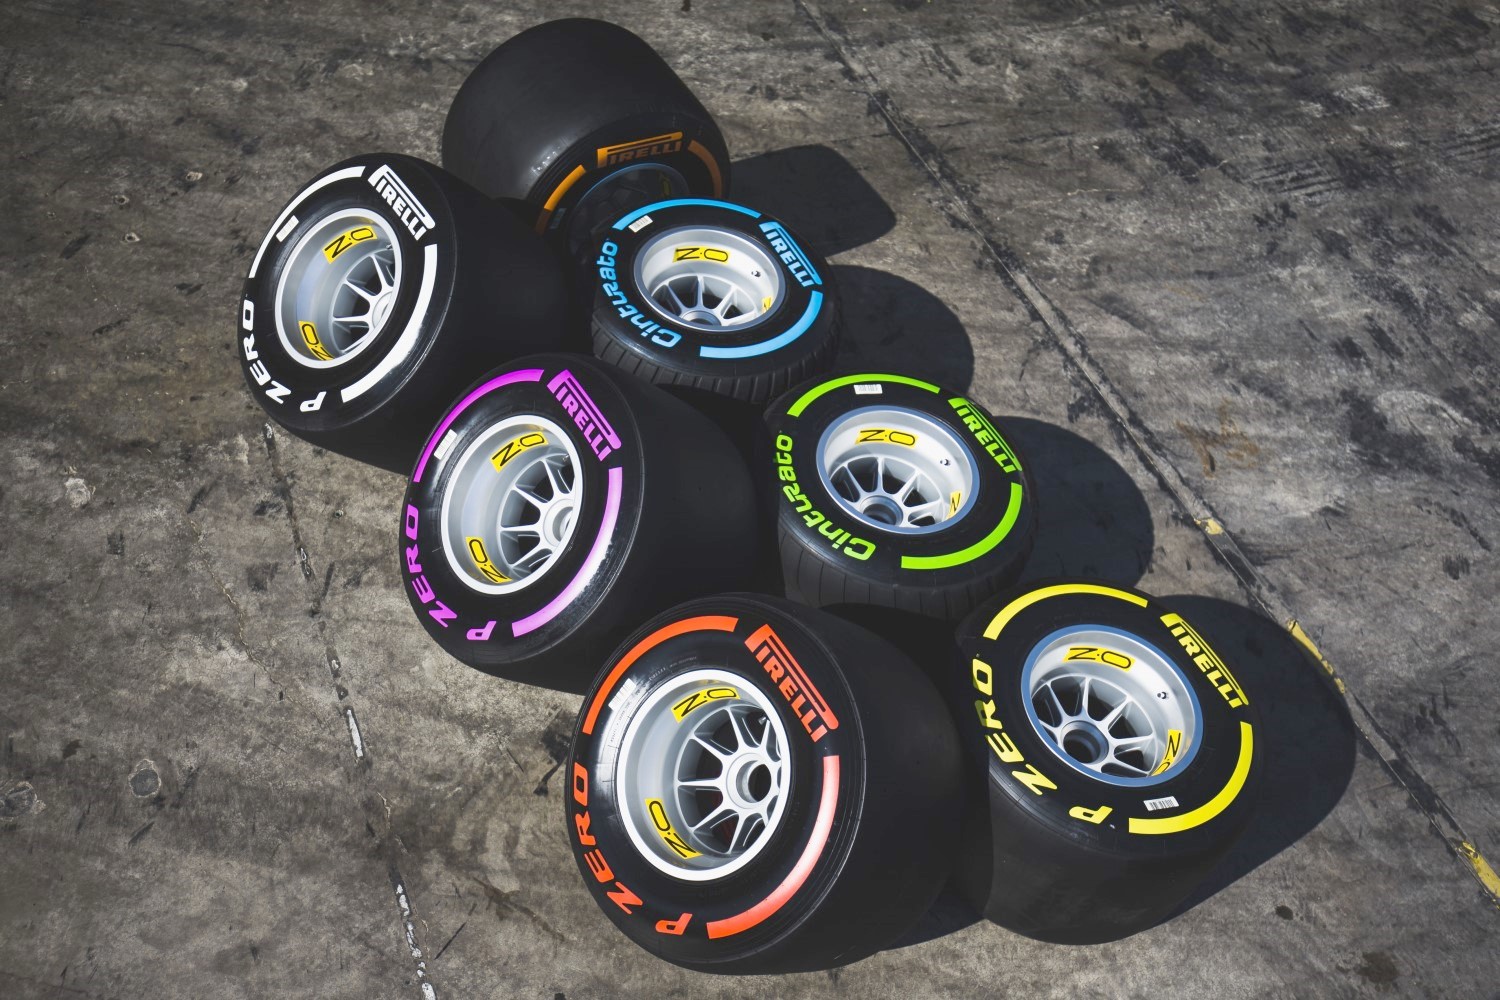 2017 Pirelli tires